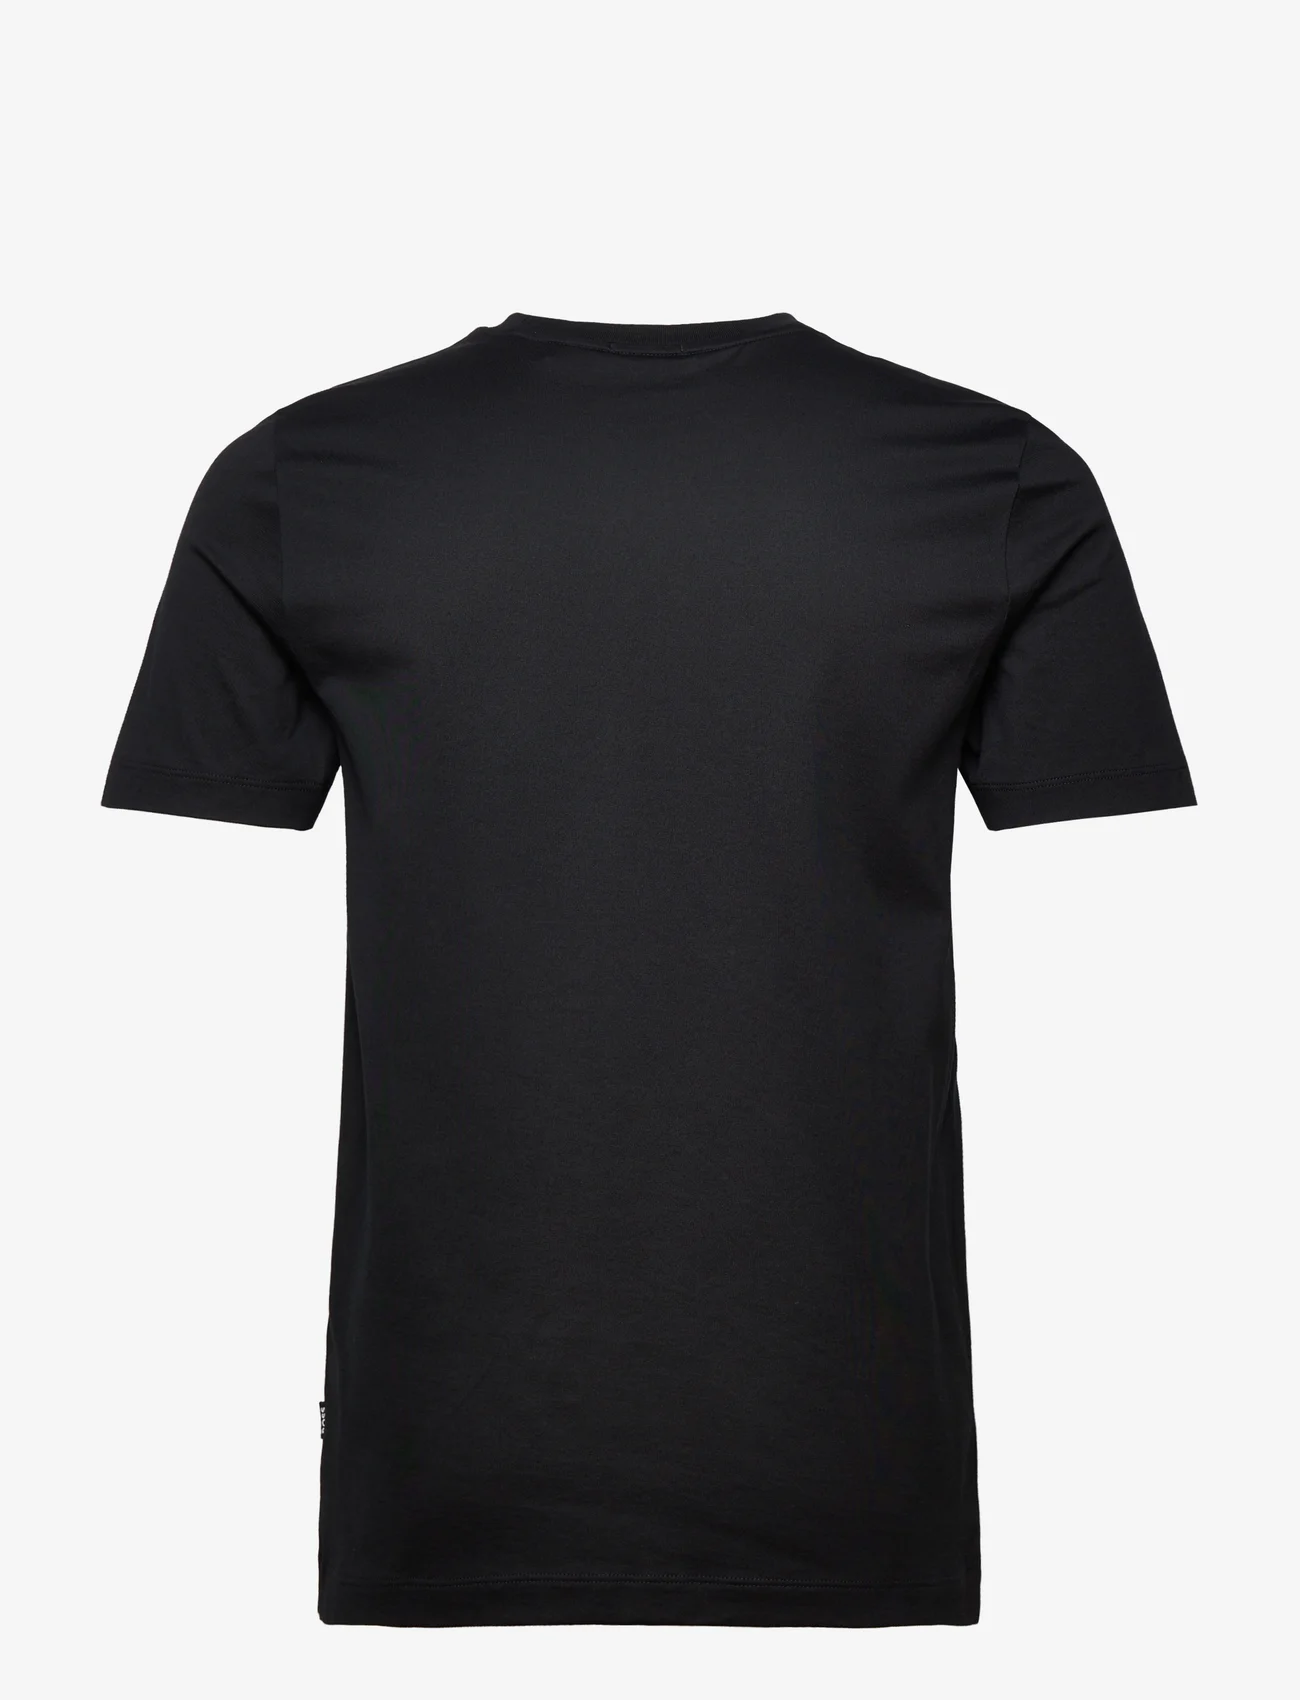 BOSS - Tessler 186 - kortärmade t-shirts - black - 1